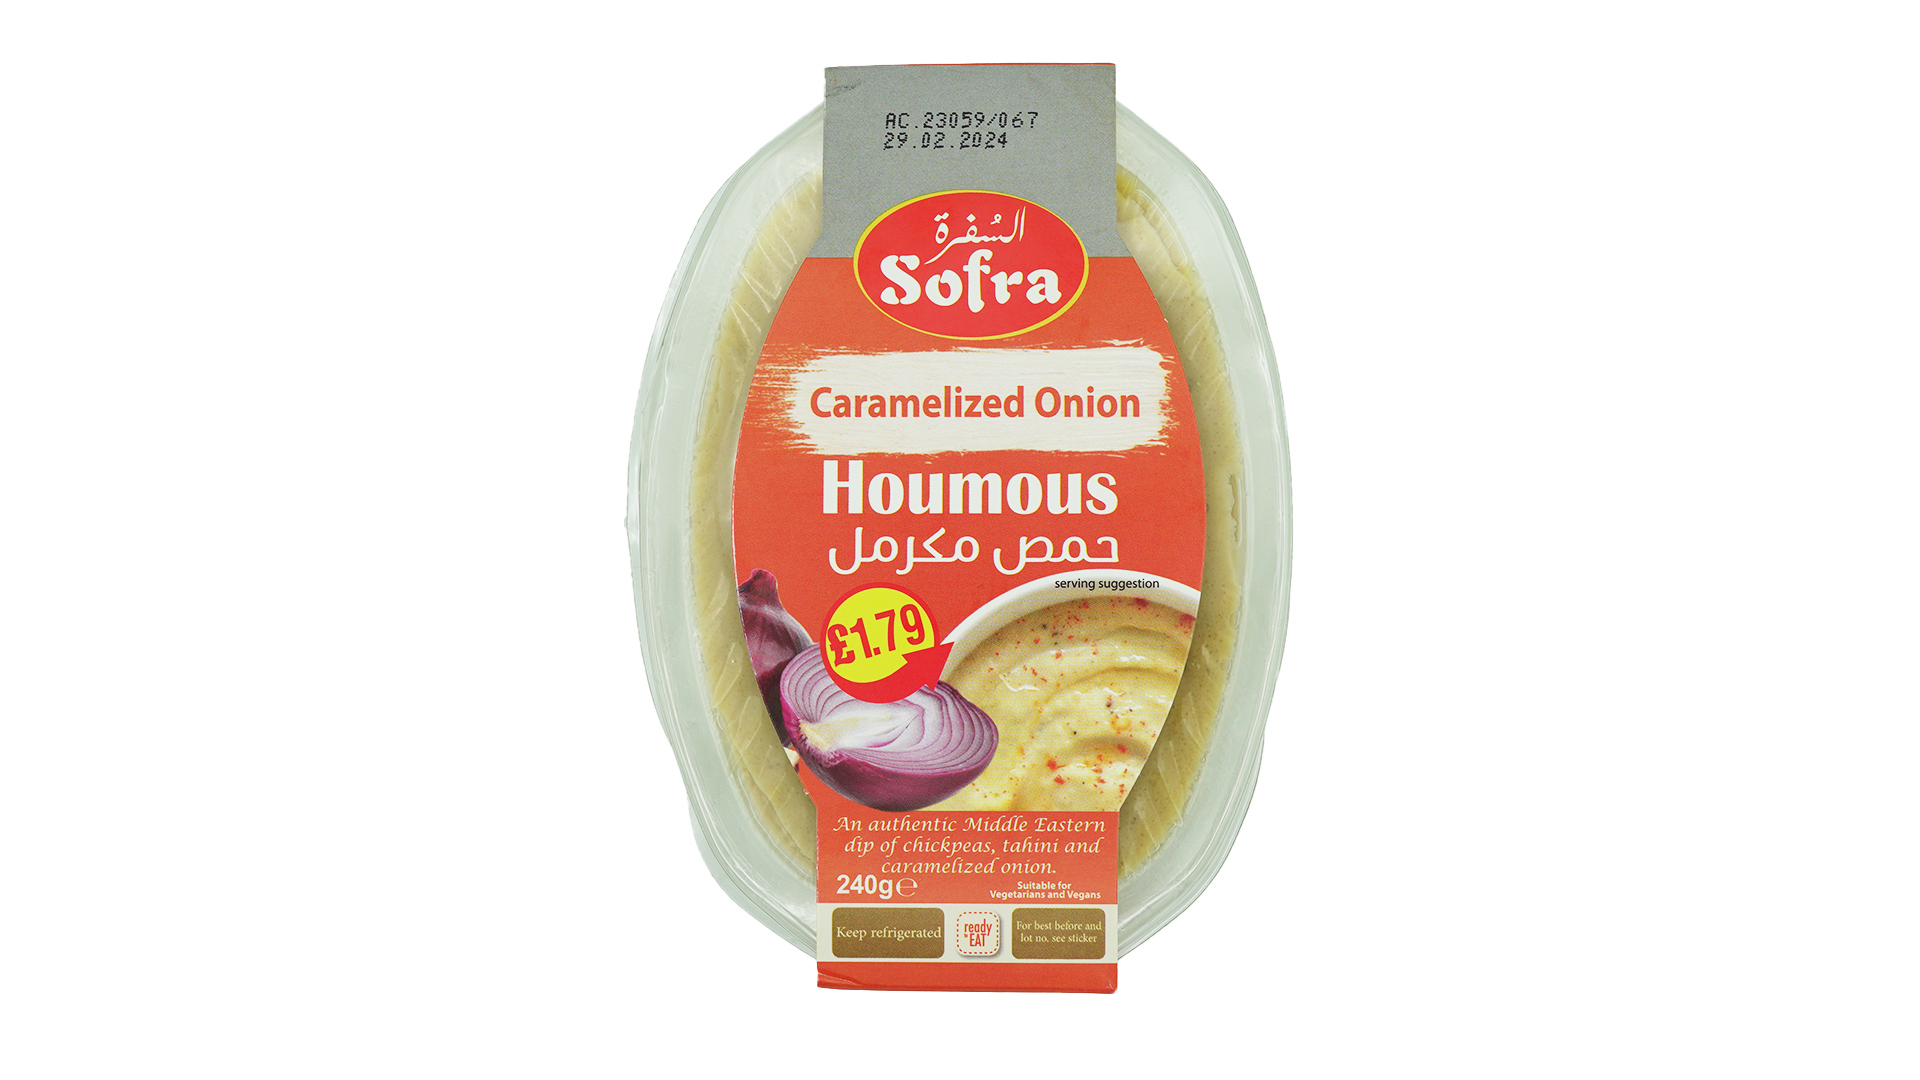 Sofra caramelized onion houmous 250g 1